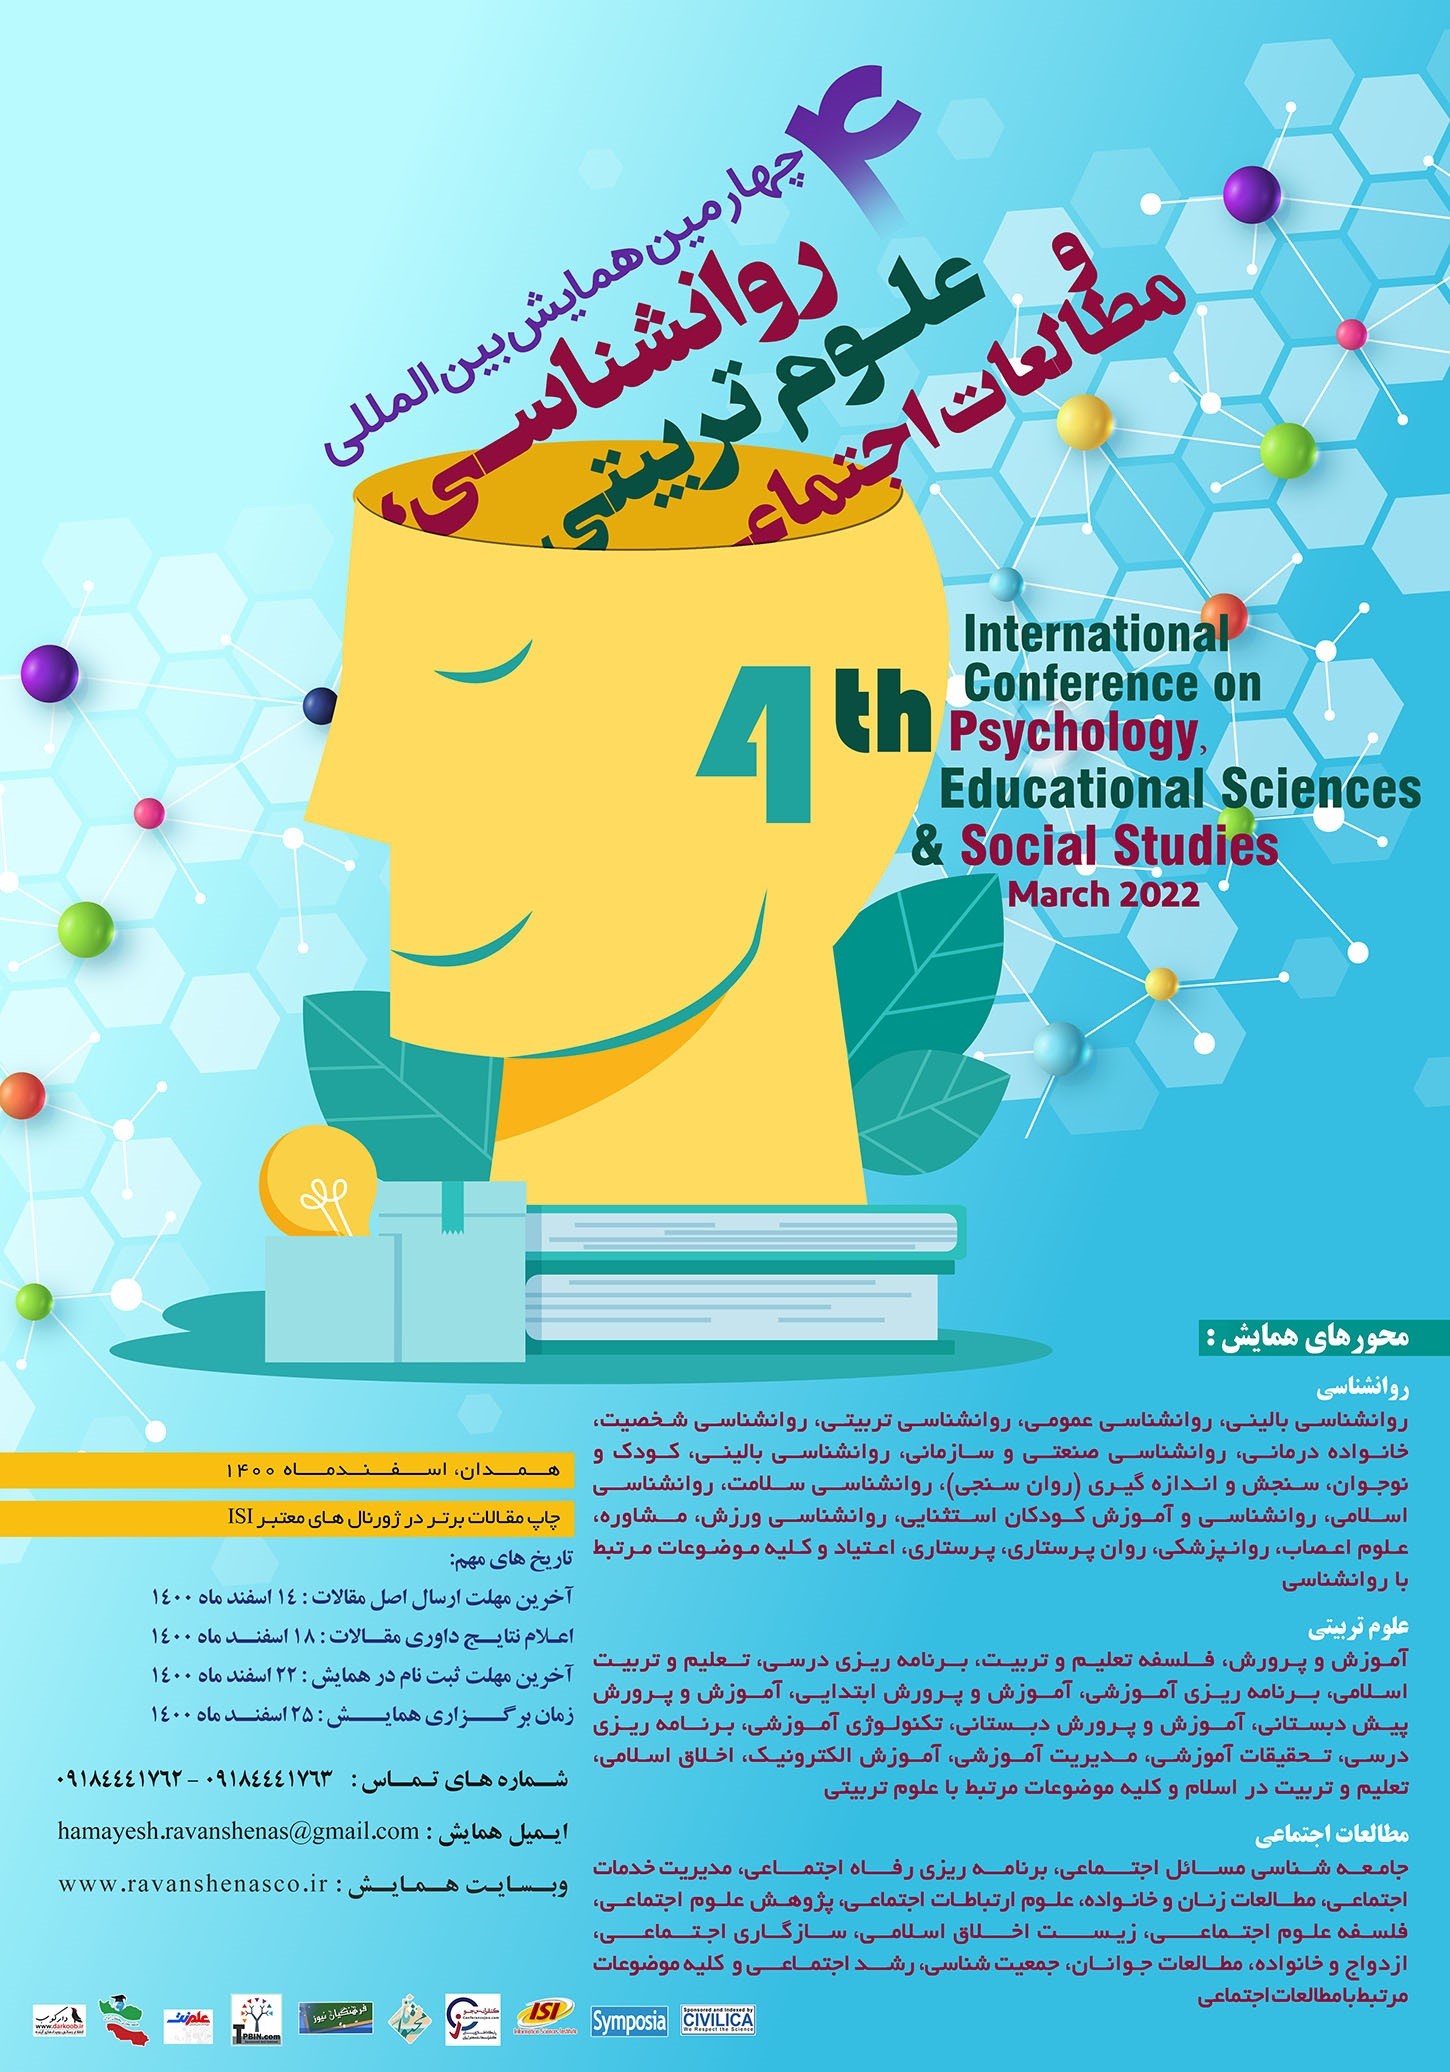 پوستر چهارمین همایش بین المللی روانشناسی، علوم تربیتی و مطالعات اجتماعی